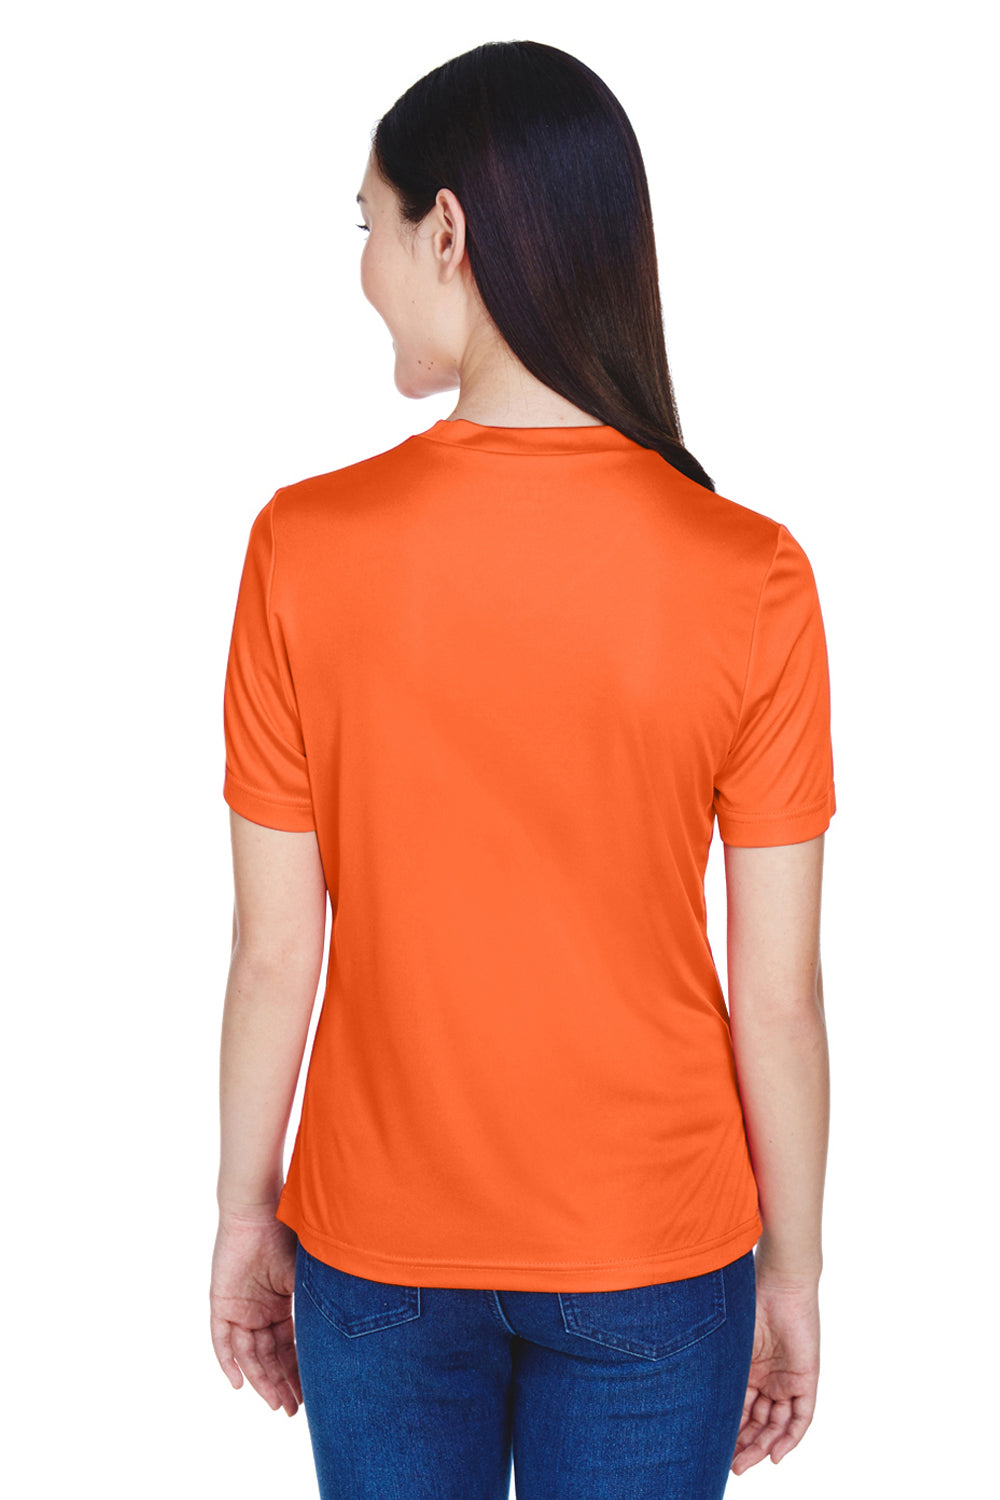 Team 365 TT11W Womens Zone Performance Moisture Wicking Short Sleeve V-Neck T-Shirt Orange Back